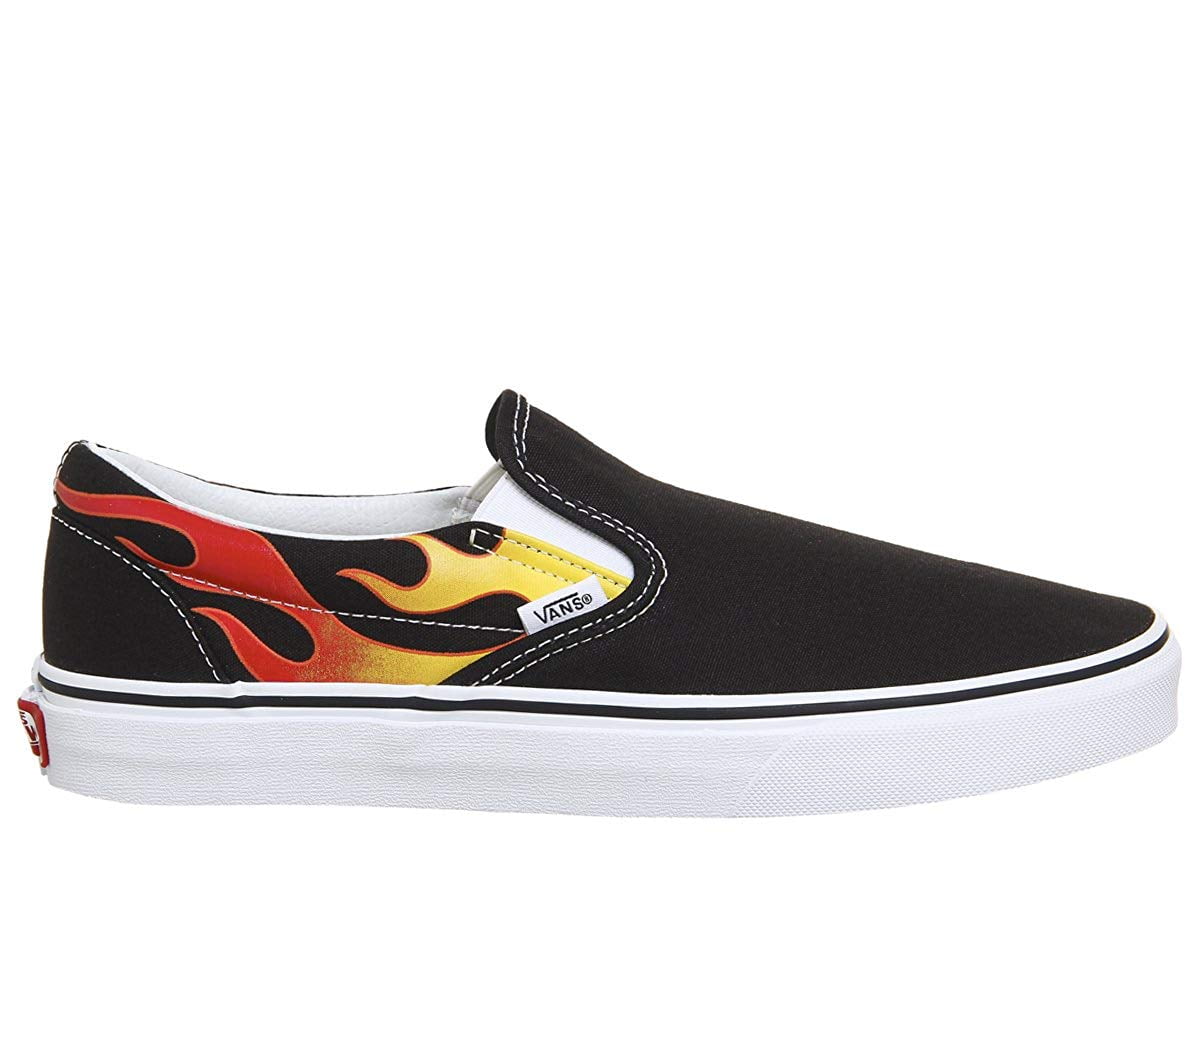 Vans - Vans Classic Slip On Flame Black/True White Men's Skate Shoes